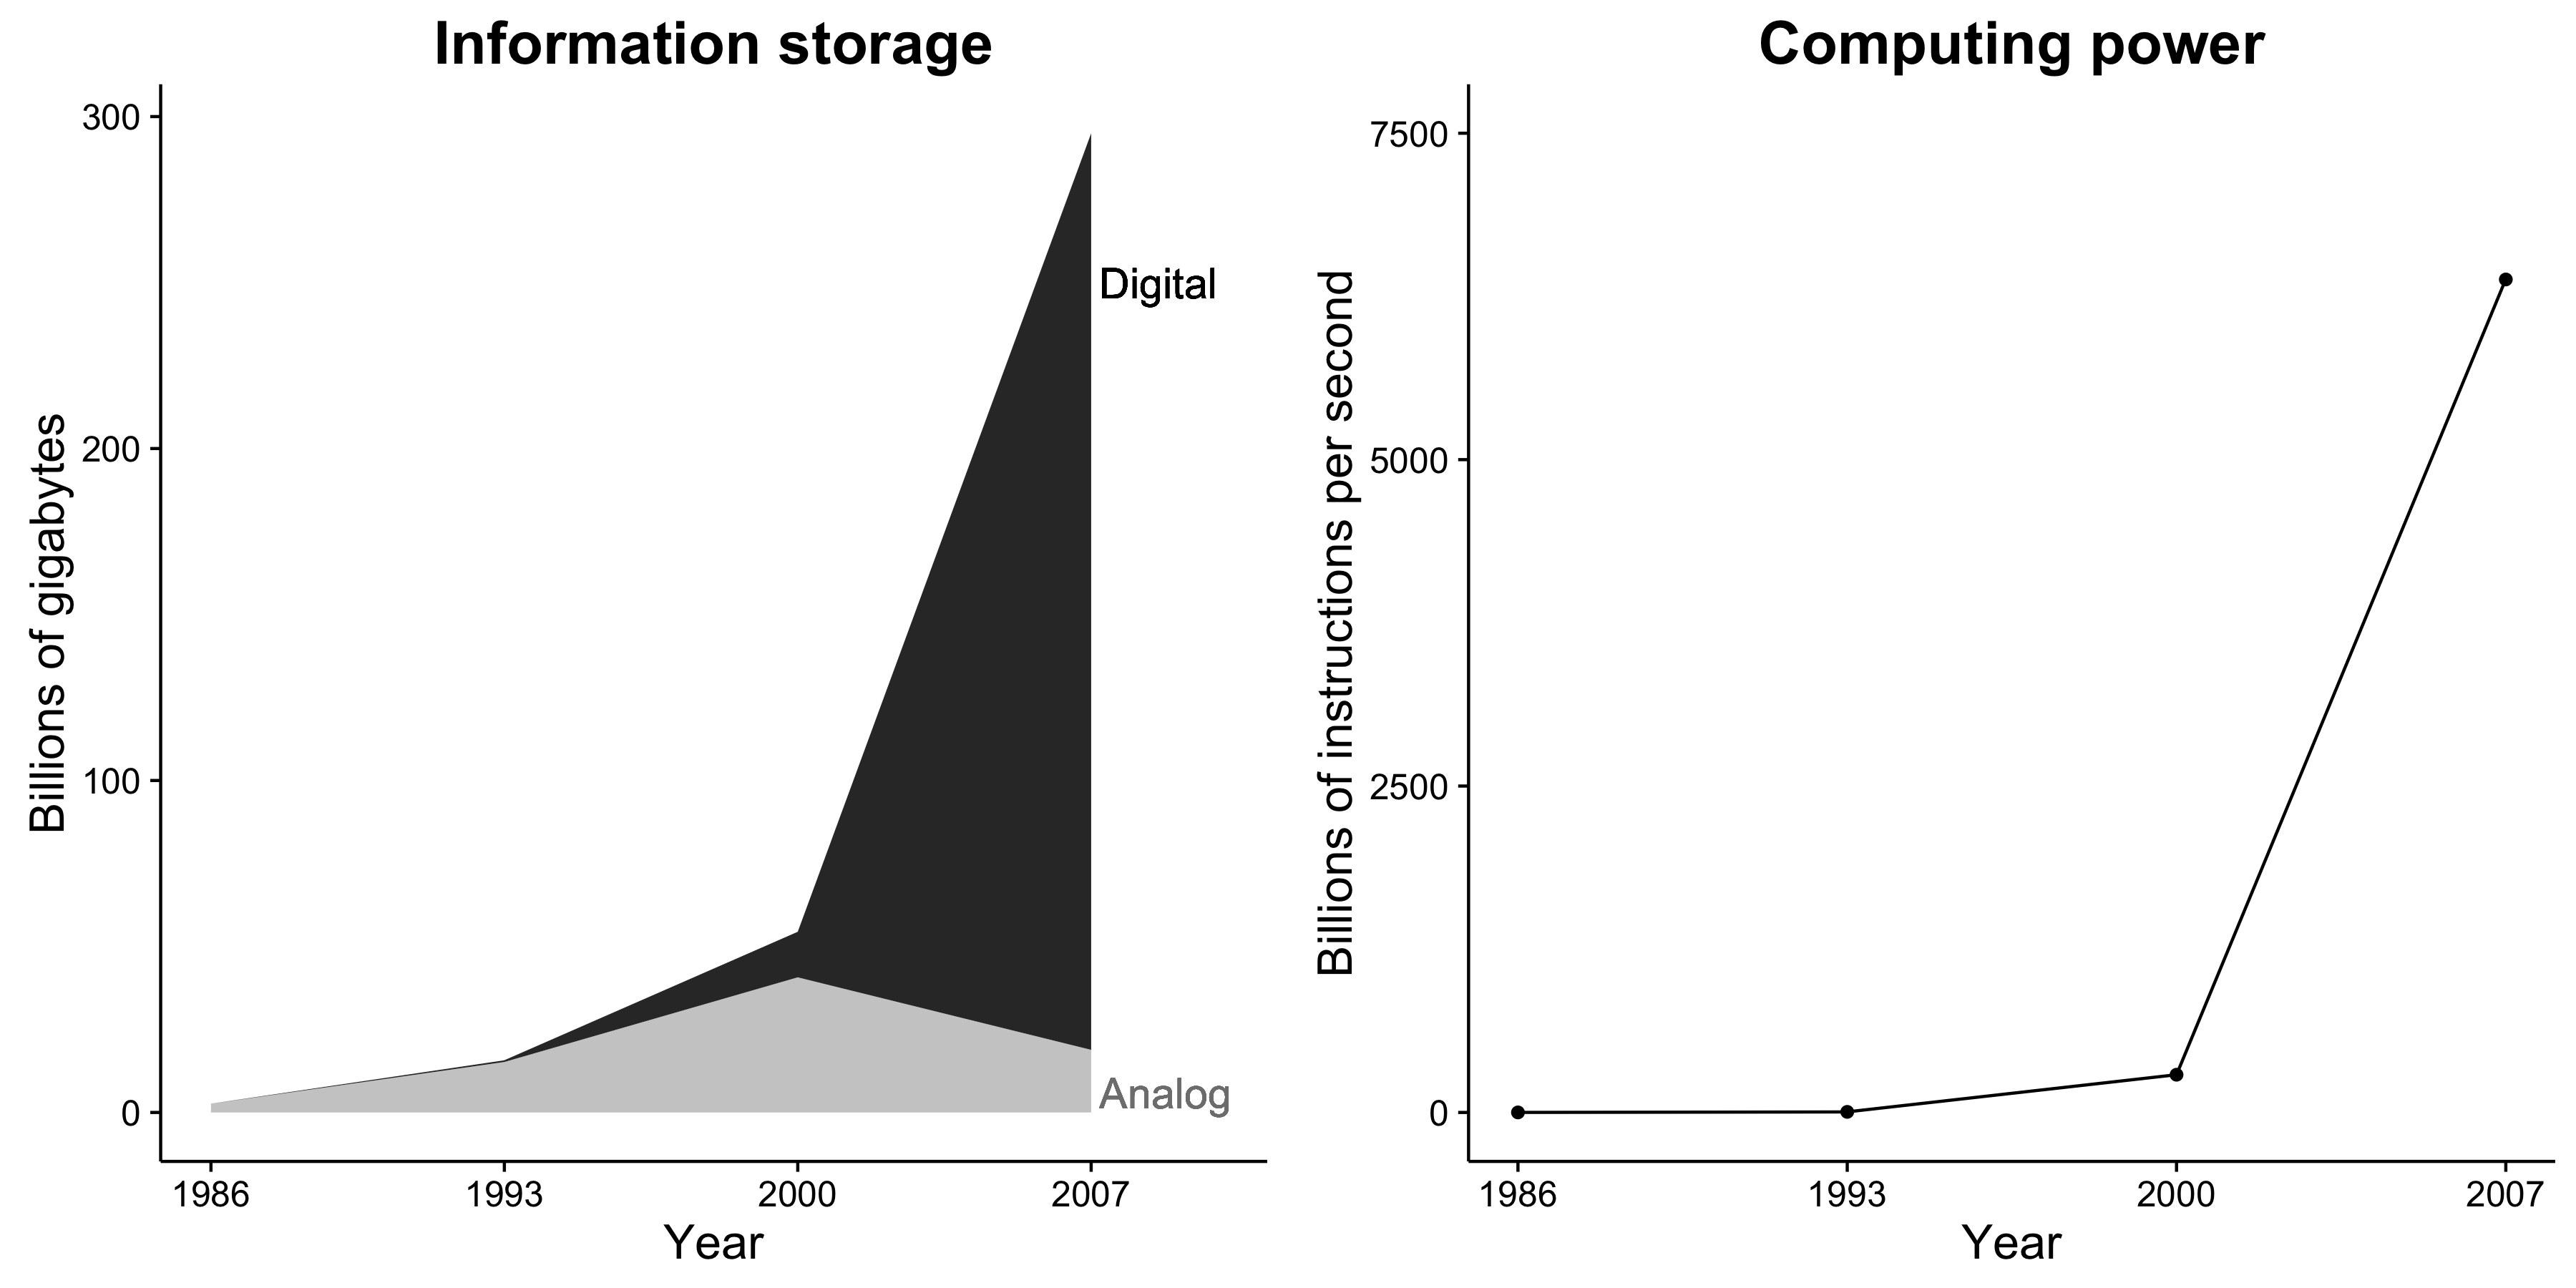 図1.1：情報記憶容量と計算能力は劇的に増加しています。さらに、情報ストレージは現在ほとんど独占的にデジタル化されています。これらの変化は、社会研究者にとって素晴らしい機会を作り出します。ヒルベルトとロペス（2011年）、図2と5から適応。